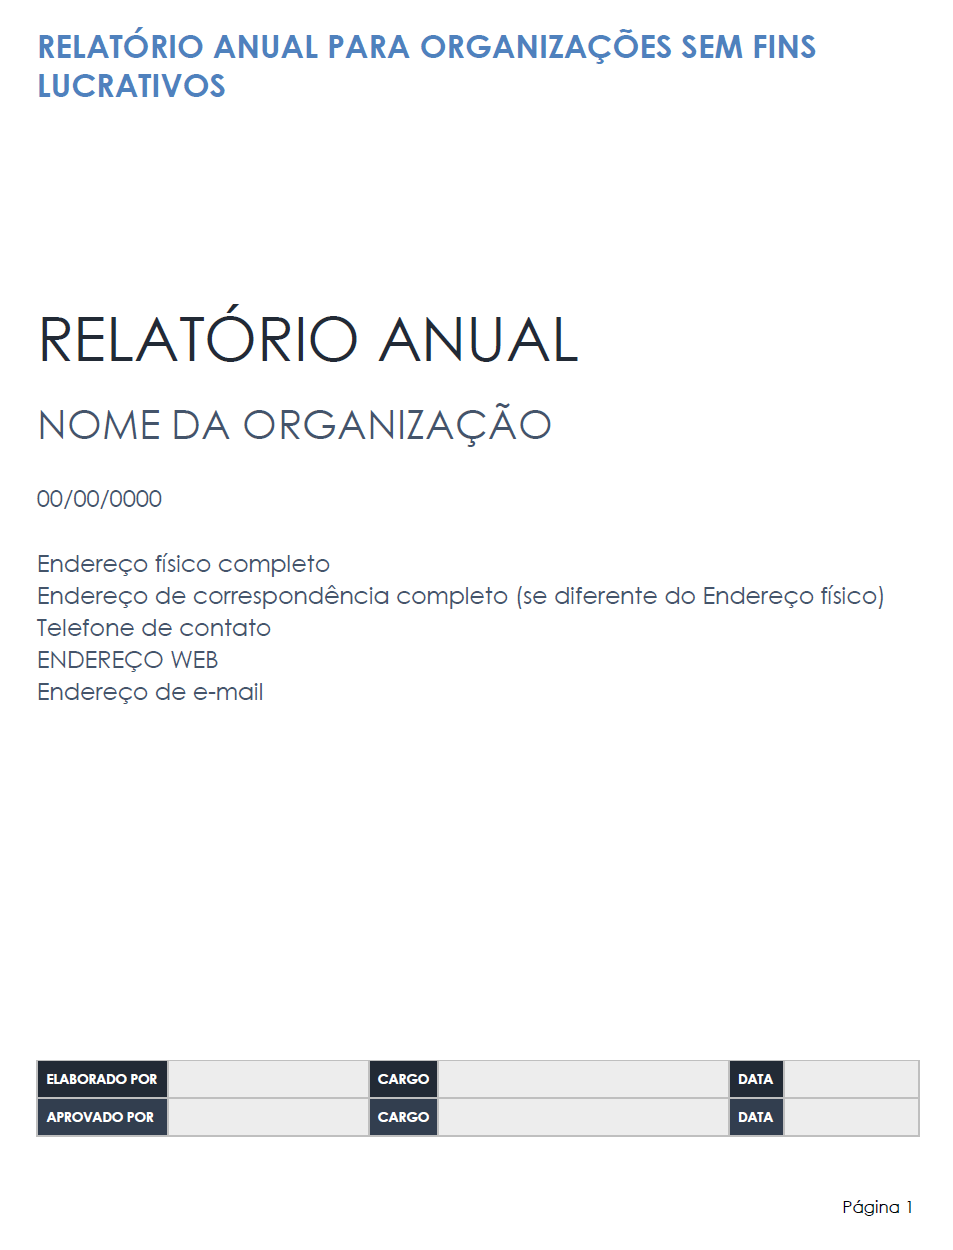  modelo de relatório anual para organizações sem fins lucrativos